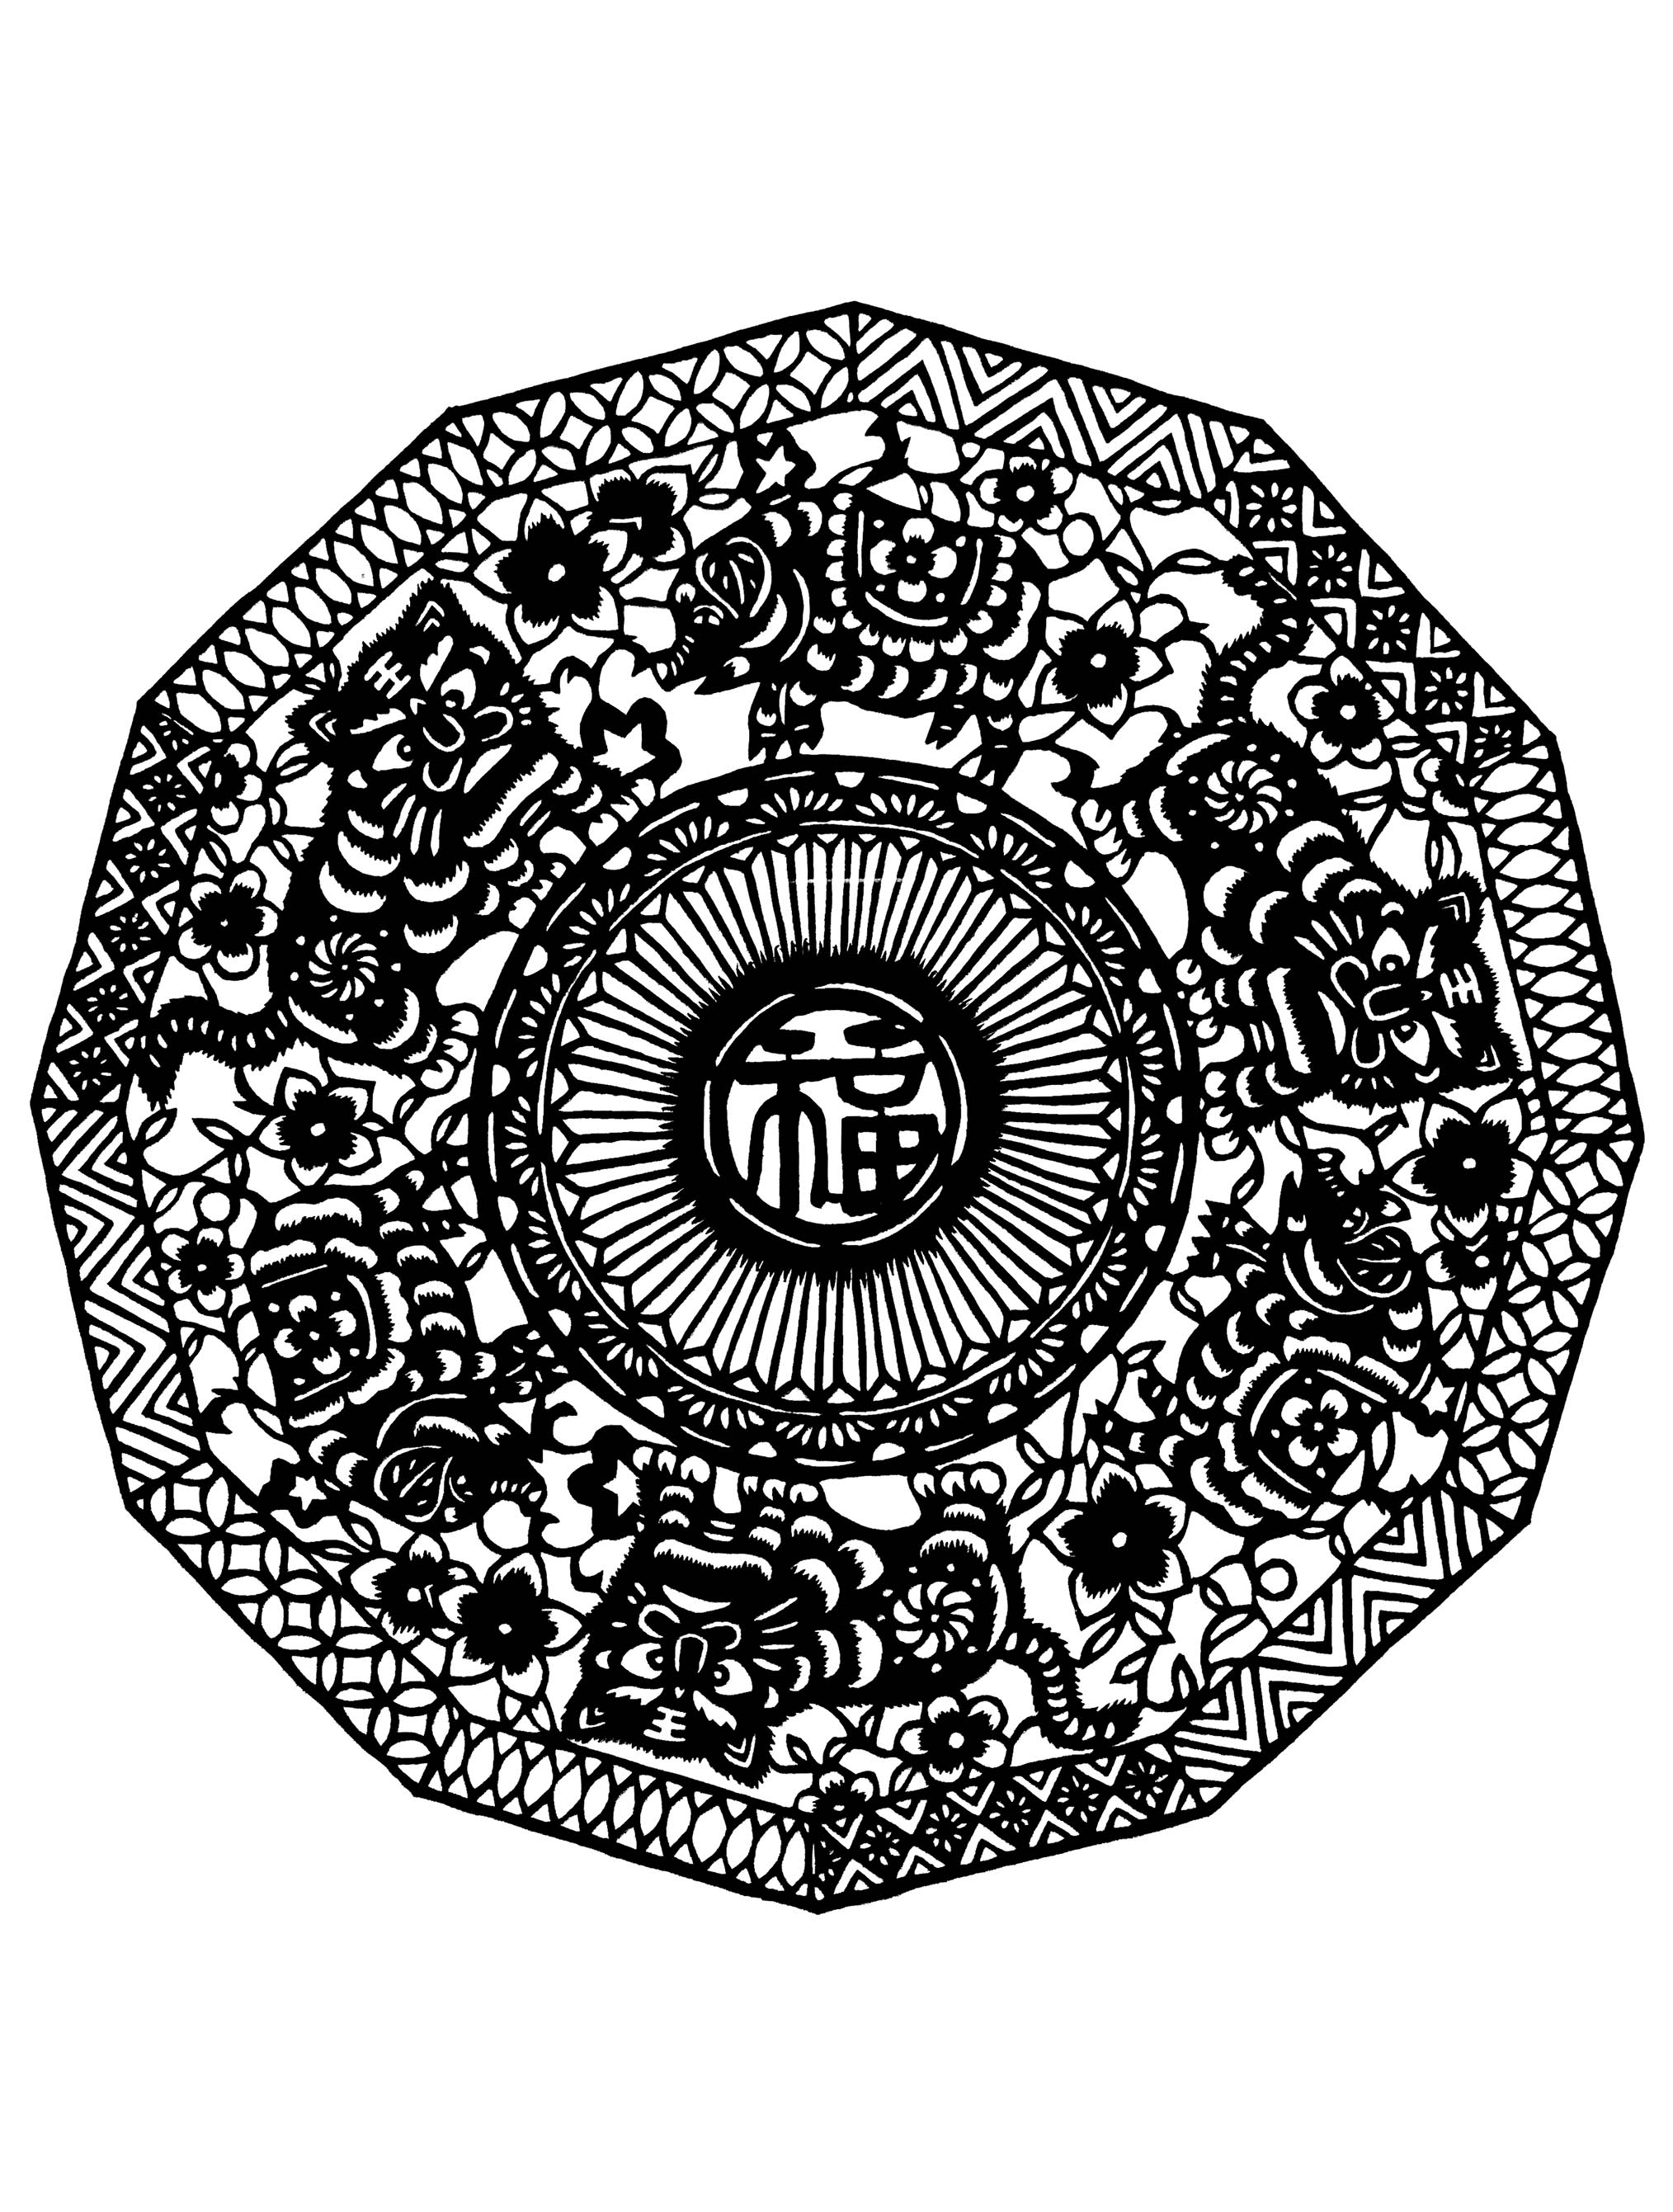 Mandala comportant des motifs, dessins et symboles chinois. Un Mandala assez difficile à colorier, parfait si vous aimez mettre en couleur de petites zones, et si vous aimez les détails variés.